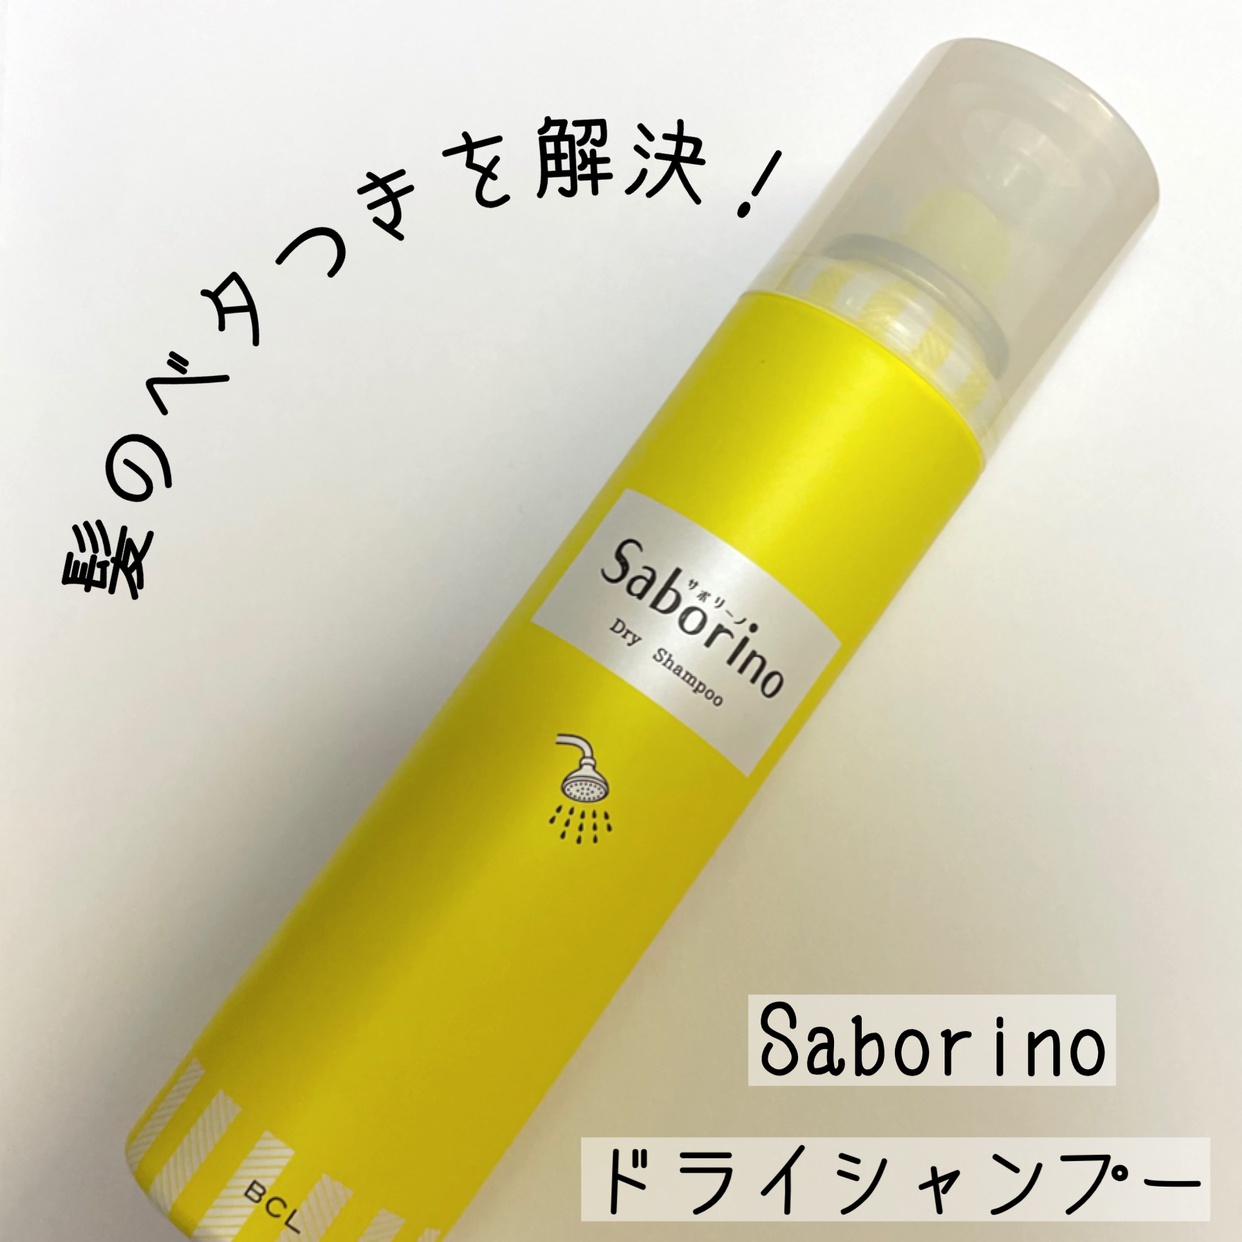 Saborino(サボリーノ) 髪を洗いまスプレーを使ったおばけパンダさんのクチコミ画像1